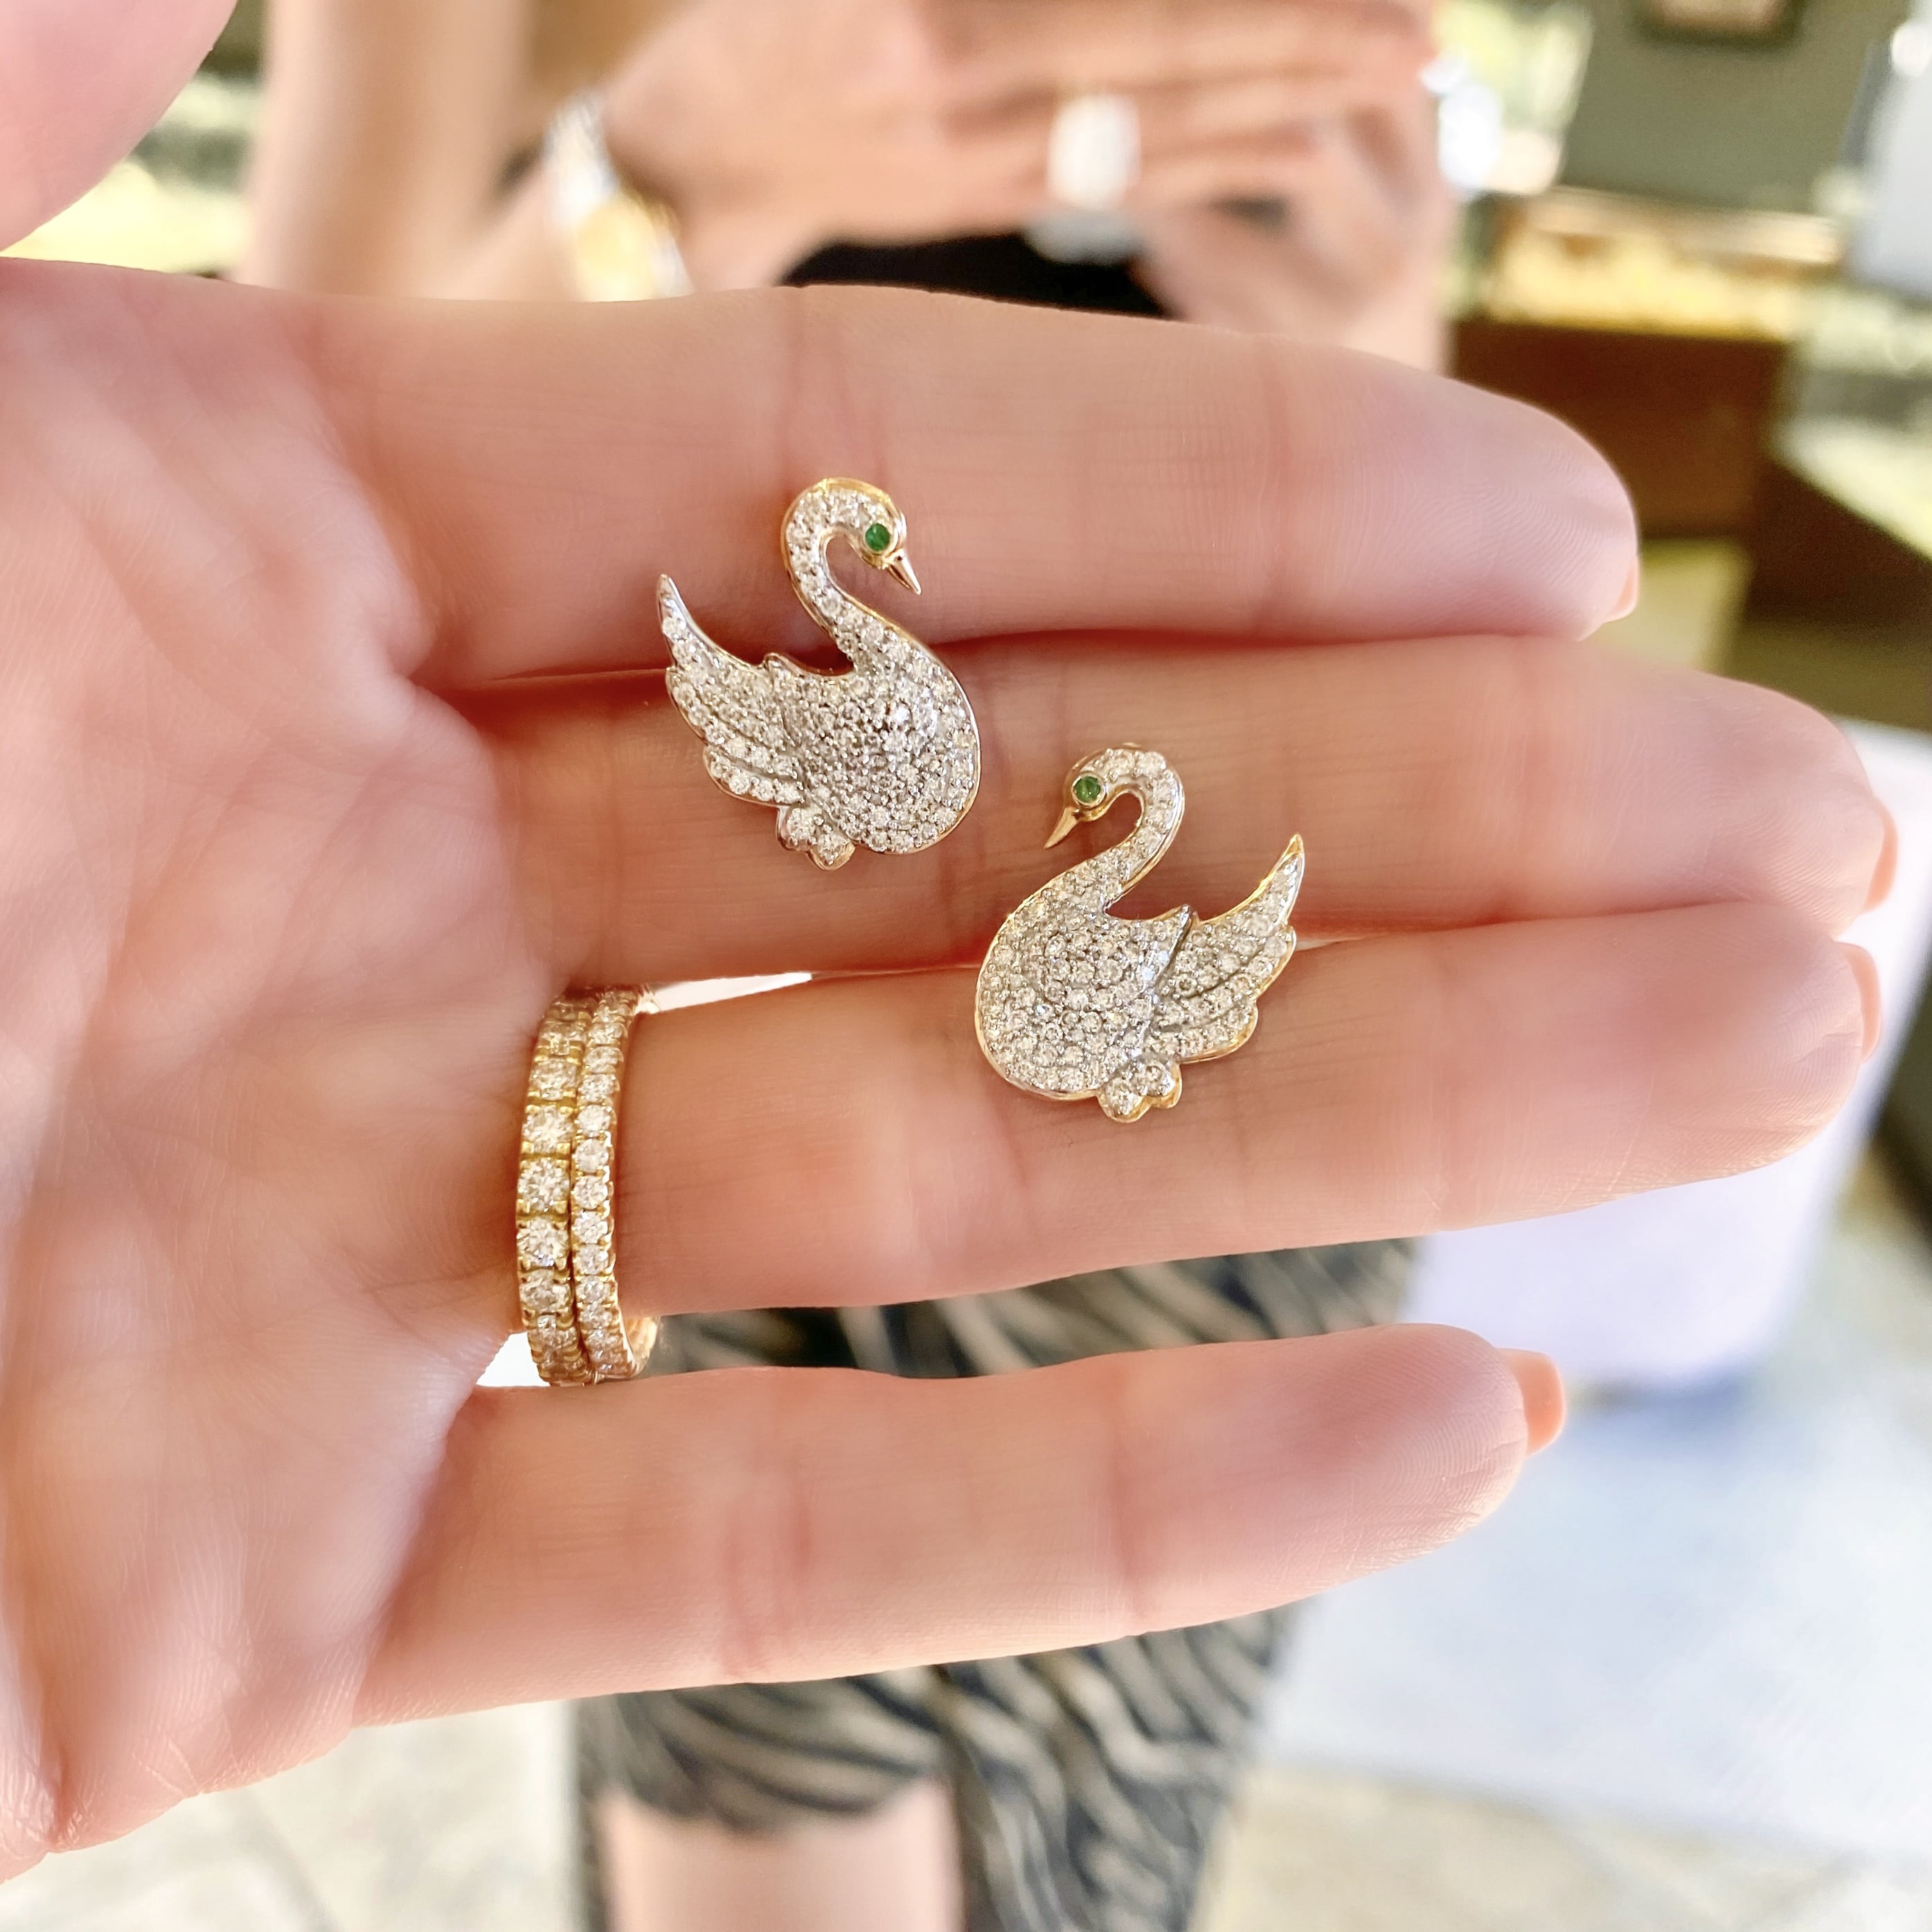 swan earrings | Ear jewelry, Girly jewelry, Jewelry